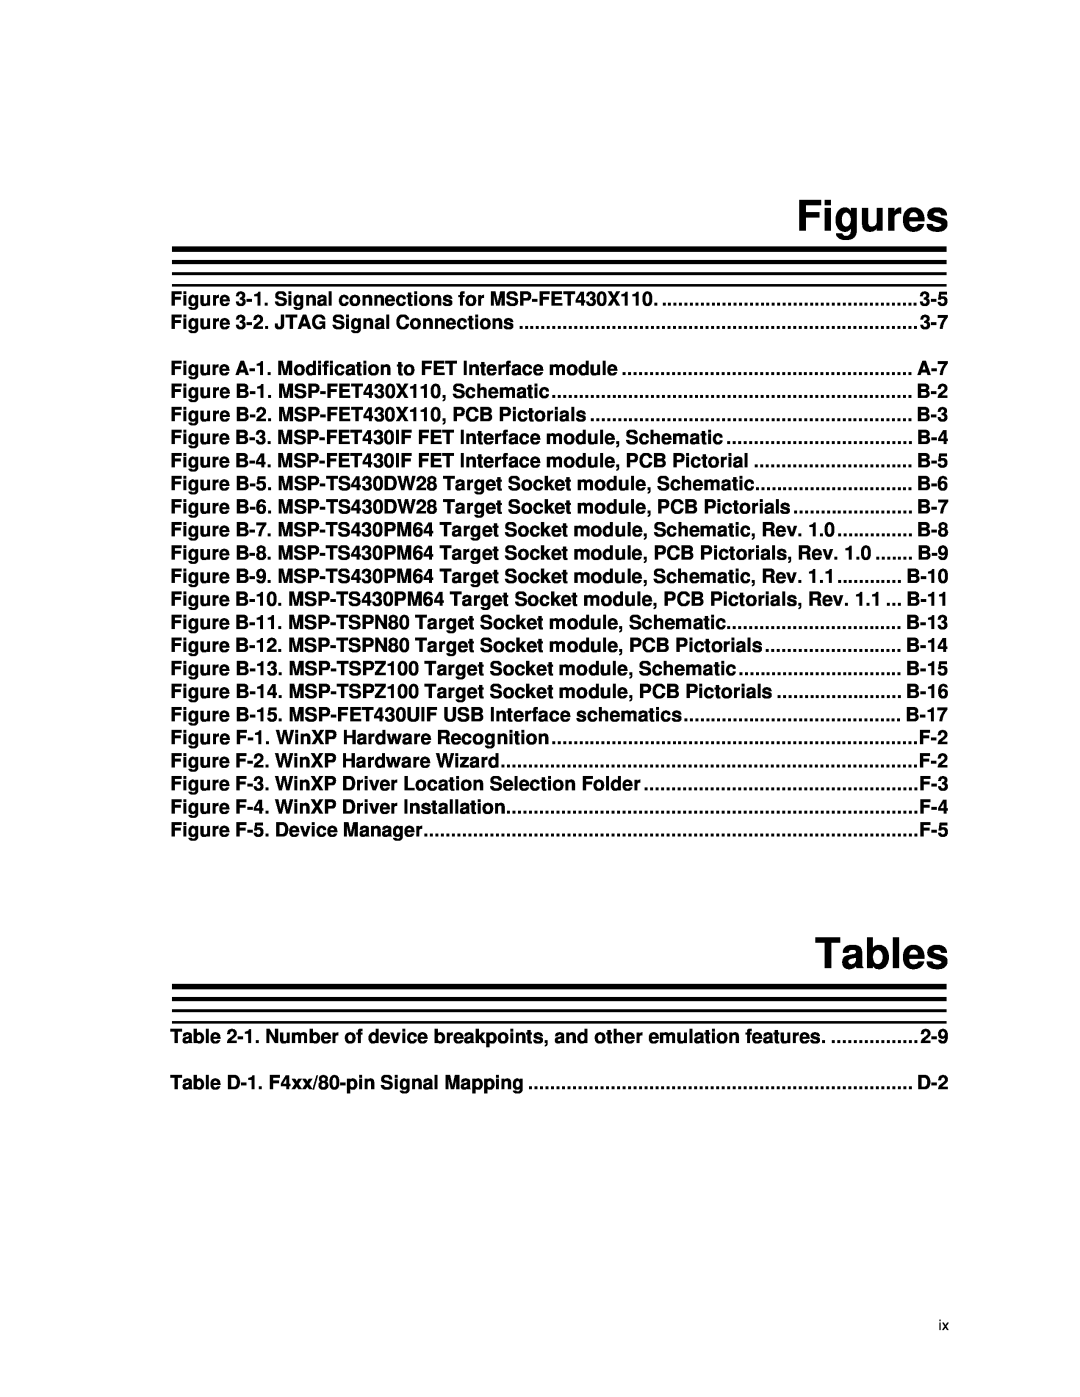 Texas Instruments MSP-FET430 manual Figures, Tables 